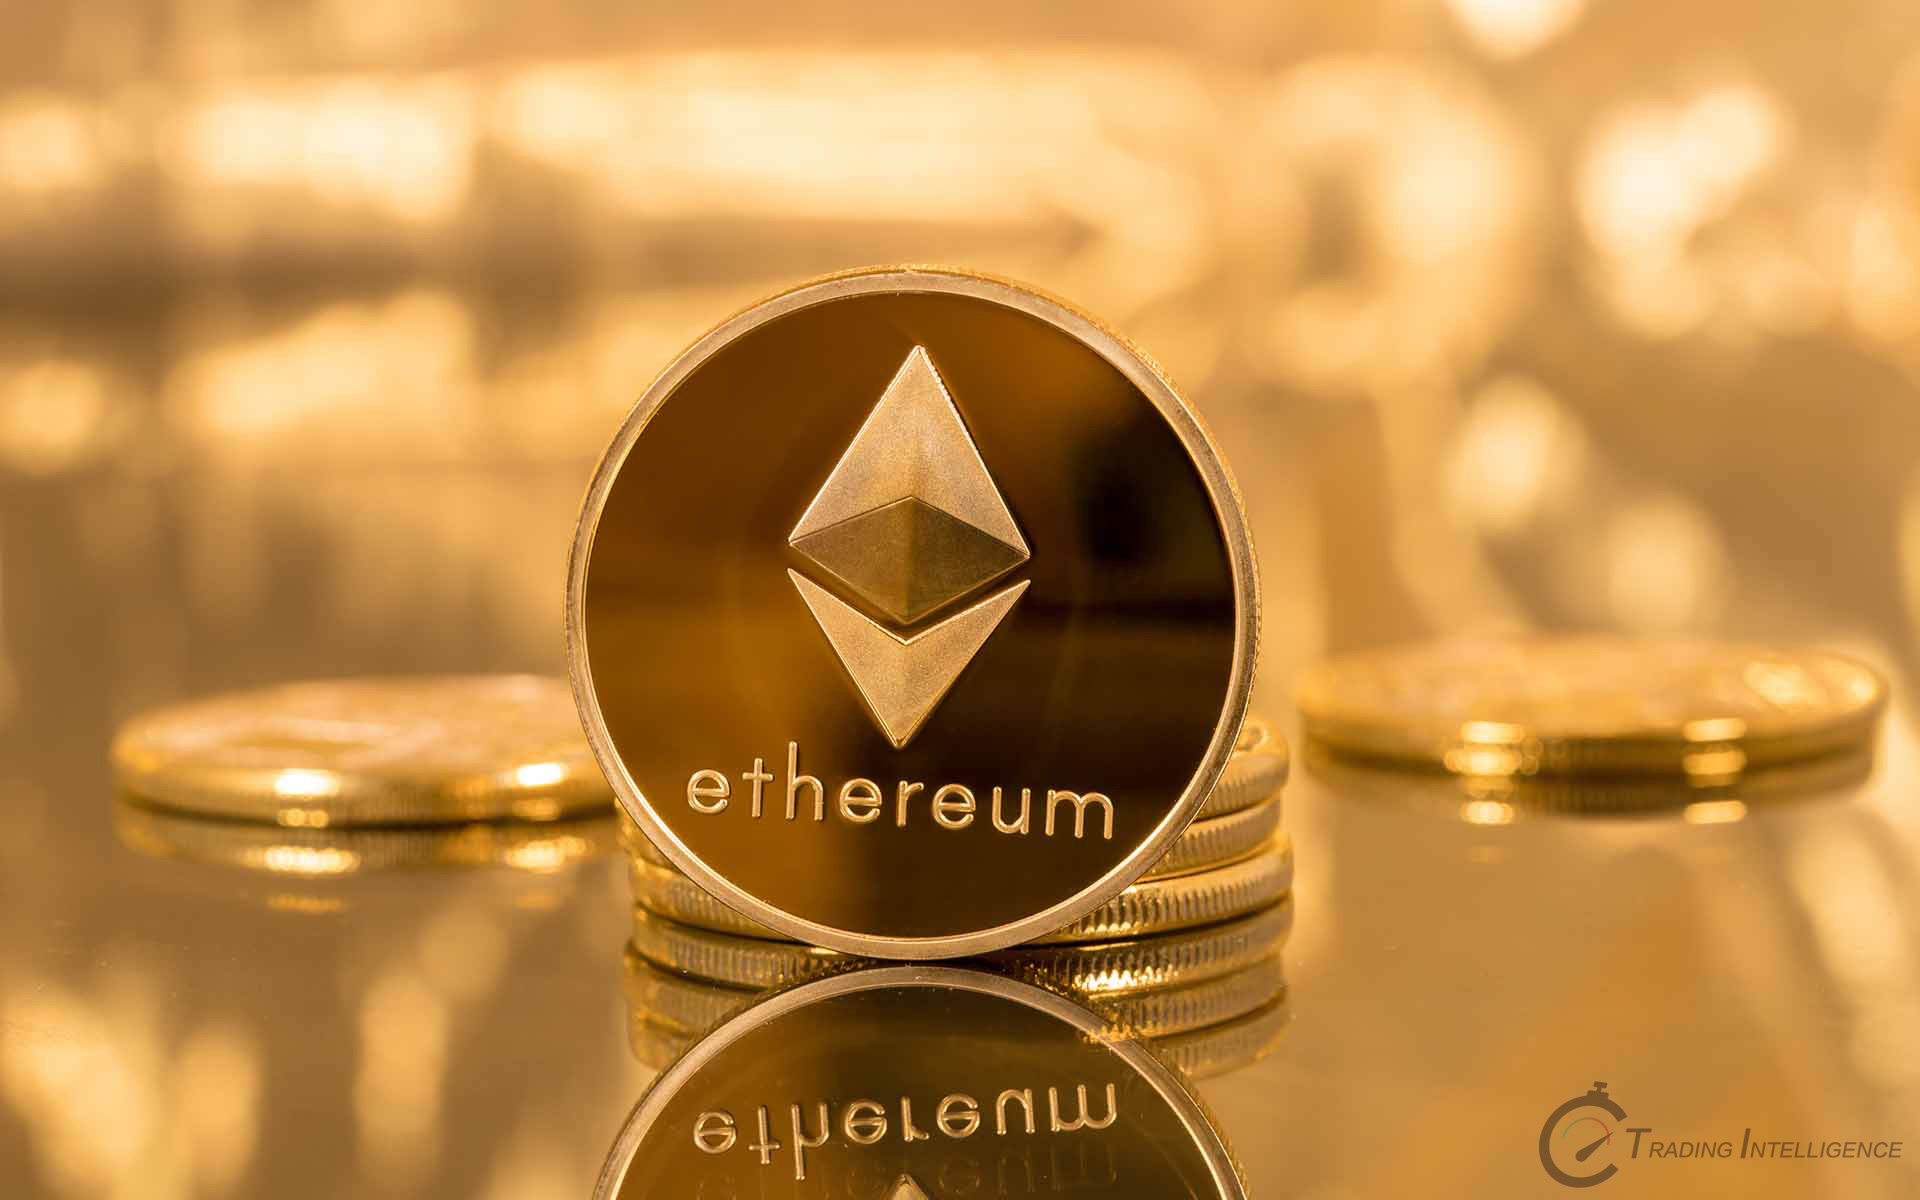 Ethereum và Litecoin di chuyển trong khi giá Bitcoin tìm kiếm chỗ đứng vững chắc hơn